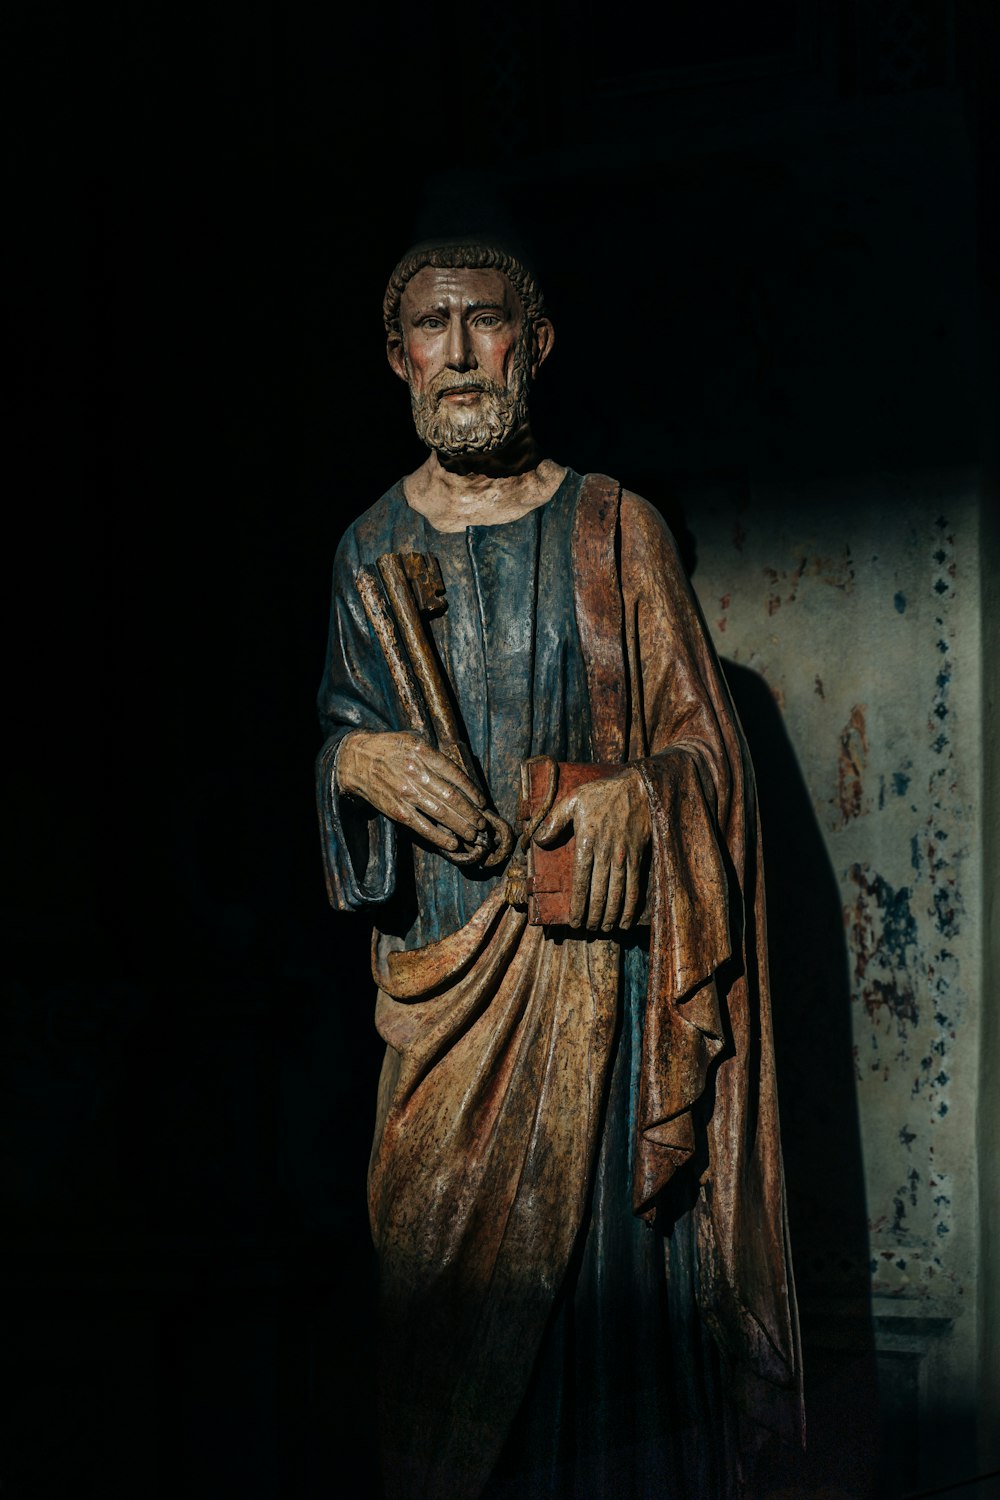 Una statua di un uomo in piedi in una stanza buia